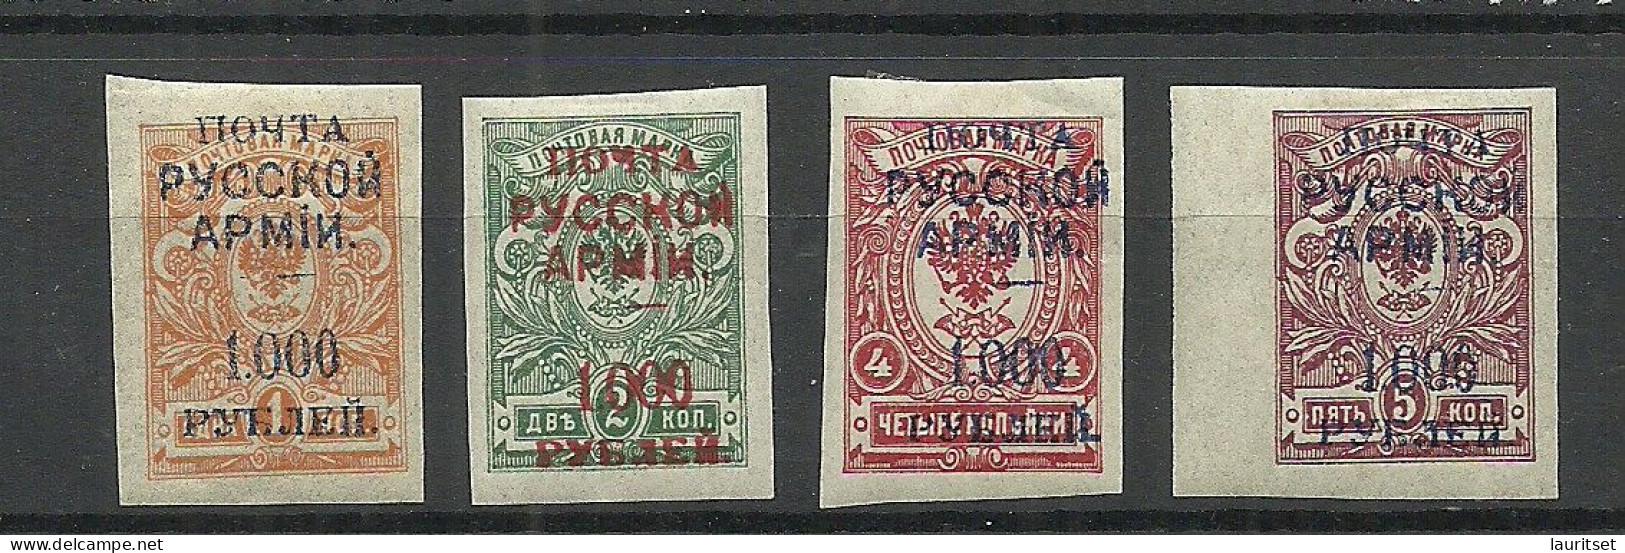 RUSSLAND RUSSIA 1920 Bürgerkrieg Wrangel Armee Lagerpost In Gallipoli, 4 Imperforated Stamps * - Wrangel Army